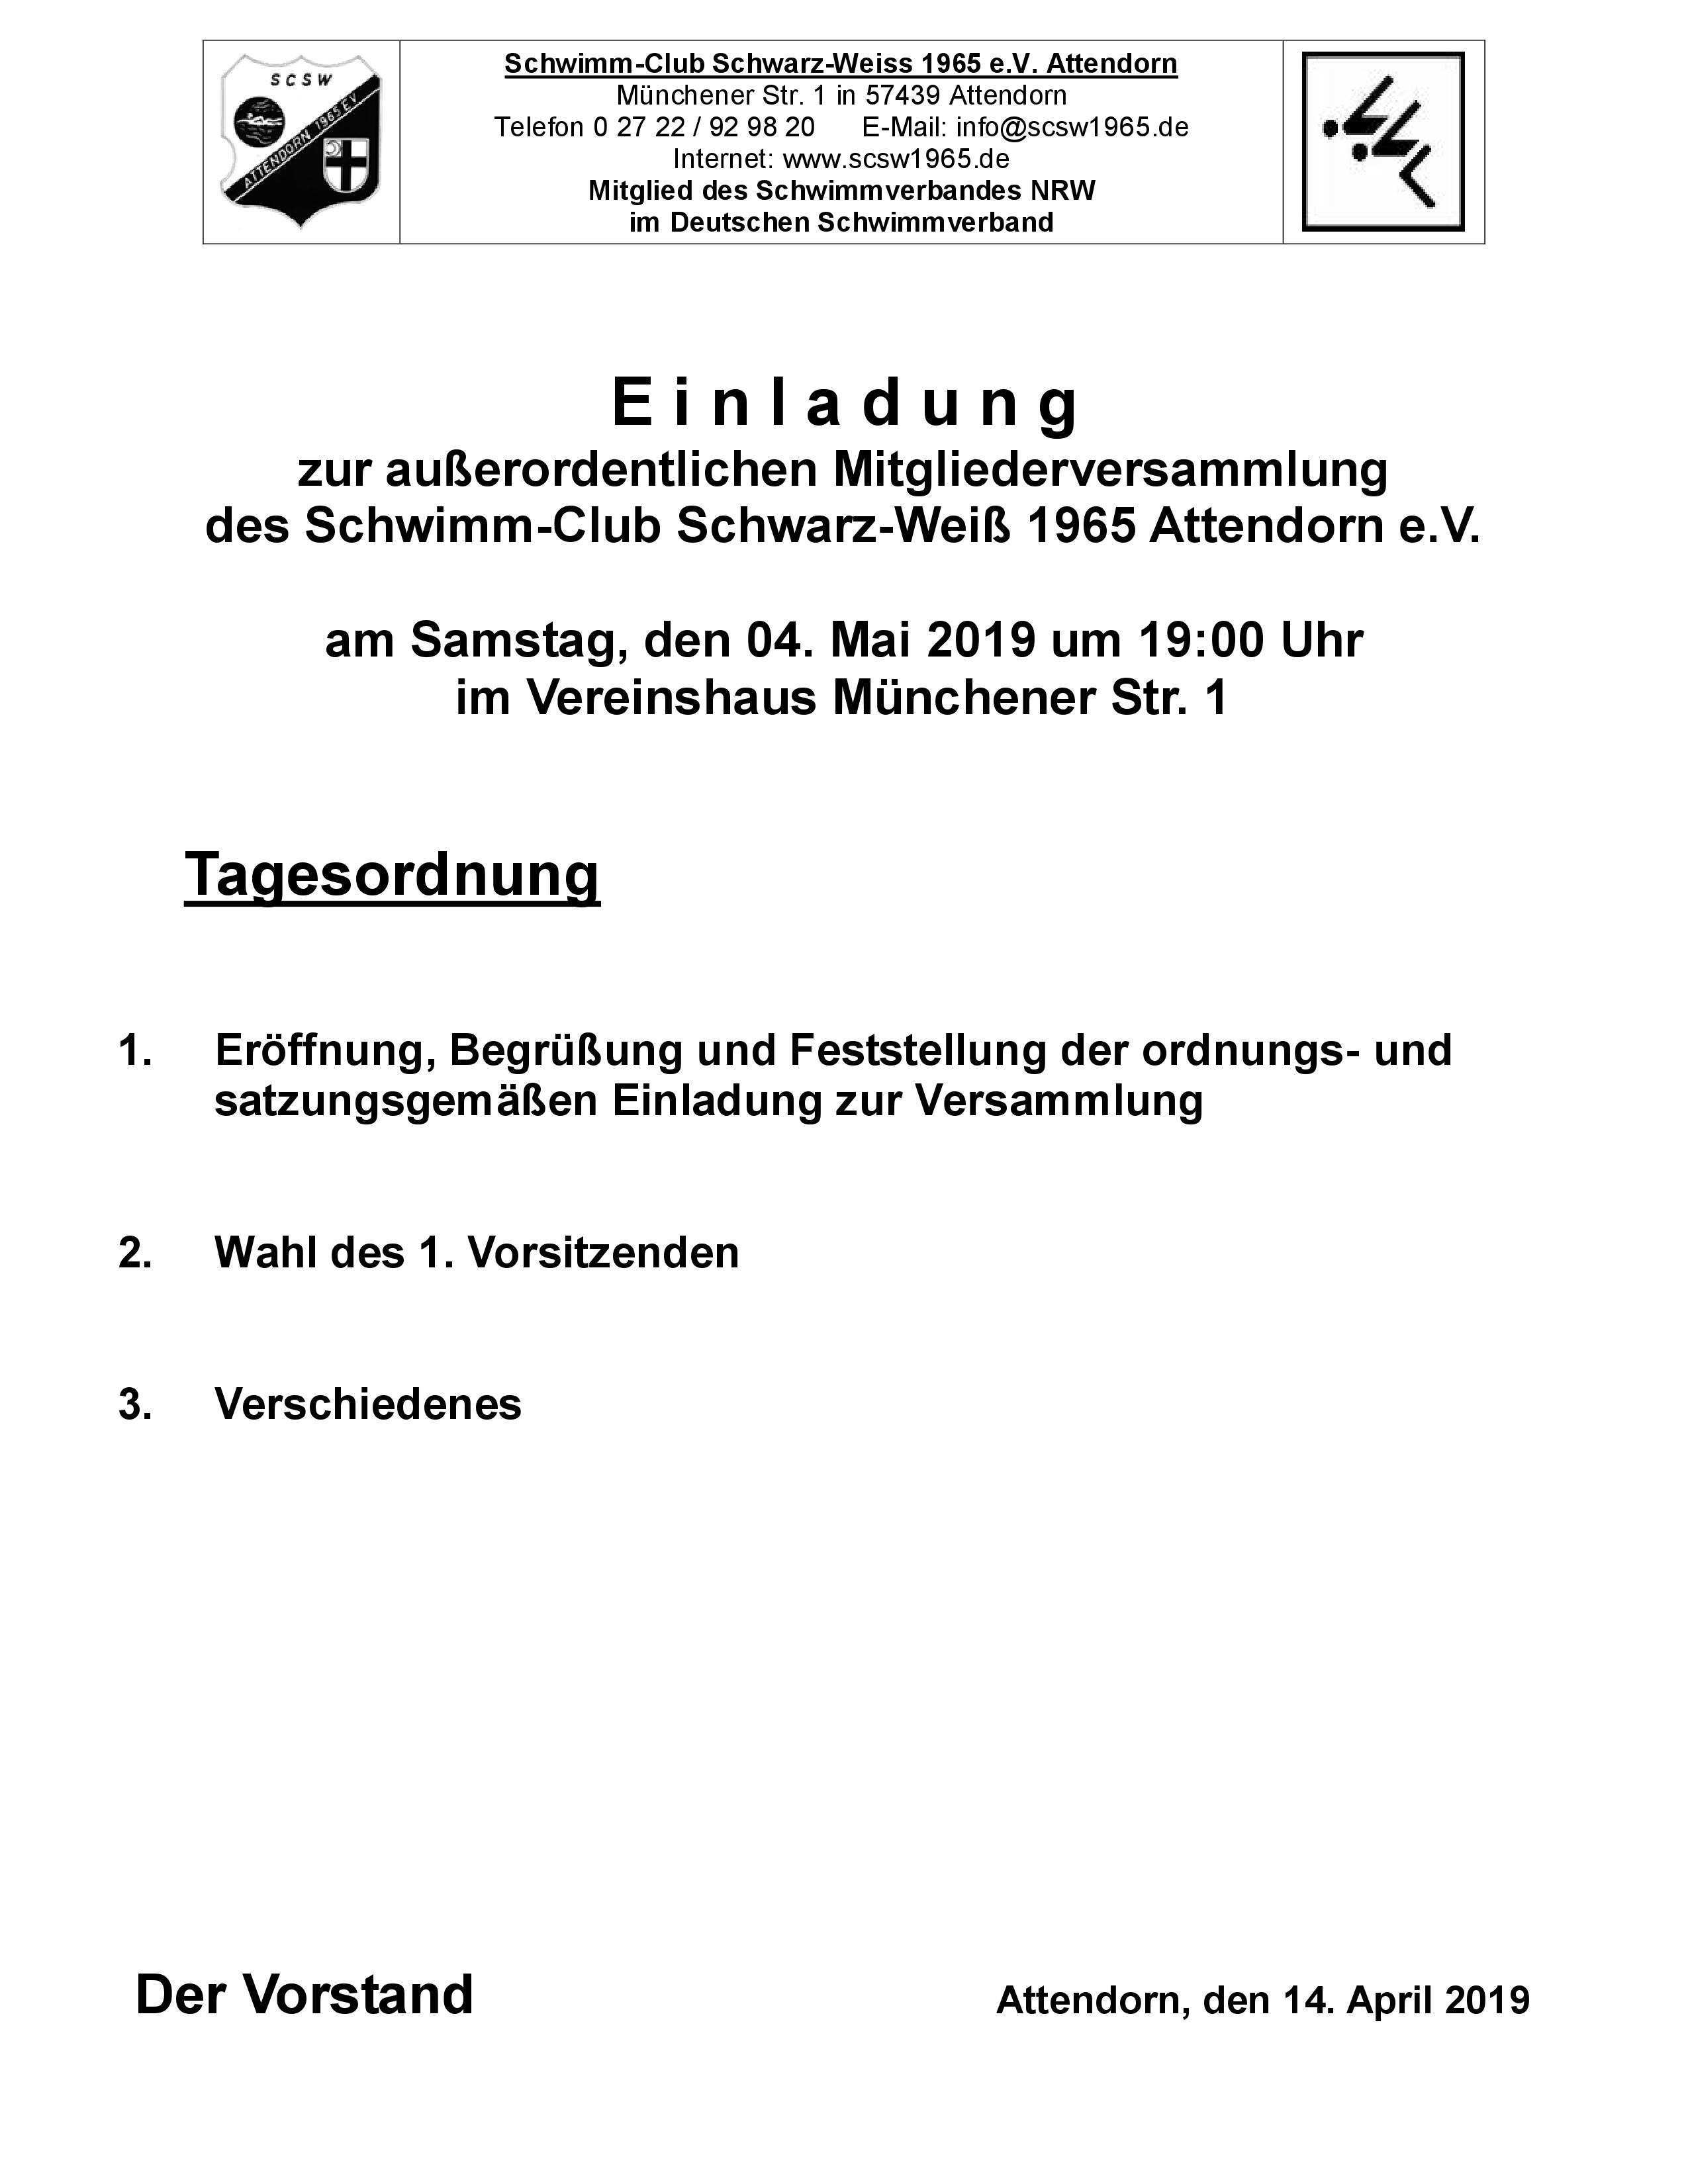 Einladung Zur Ausserordentlichen Mitgleiderversammlung Scsw Attendorn 1965 E V